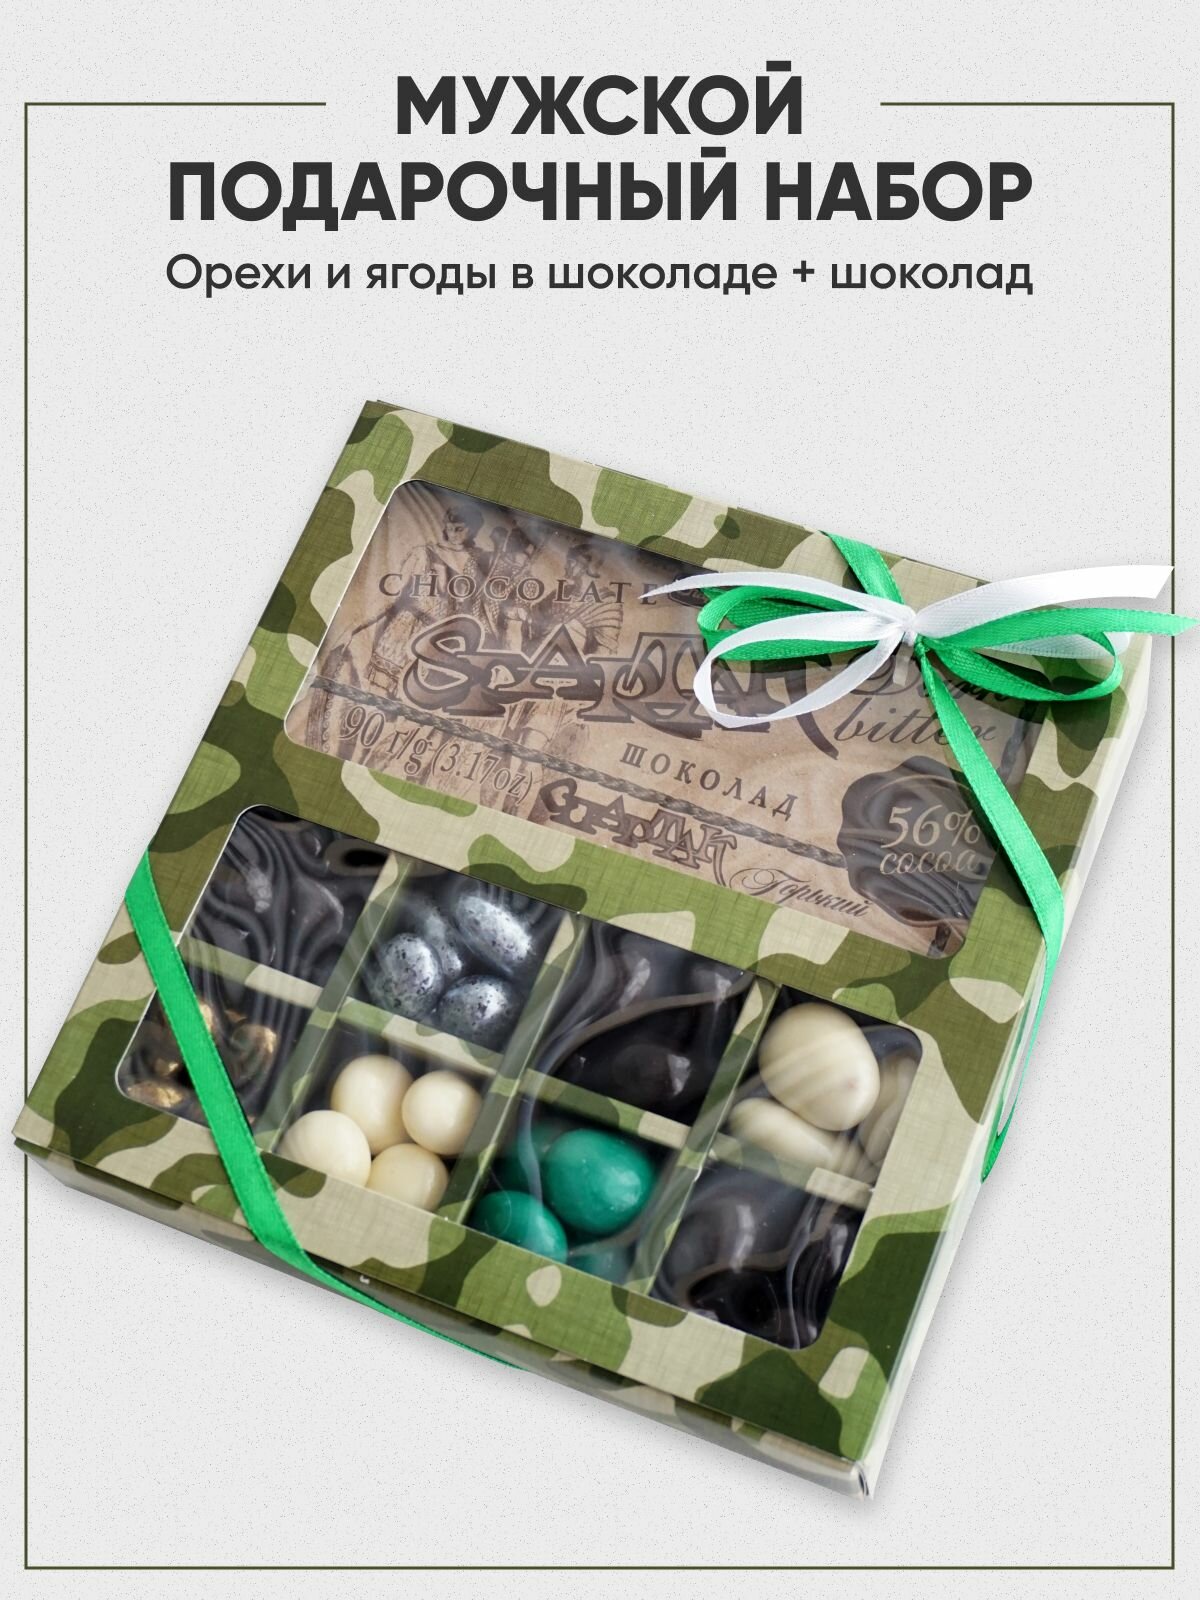 Вкусный подарочный набор для мужчин на 23 февраля: орехи и ягоды в шоколаде + шоколад